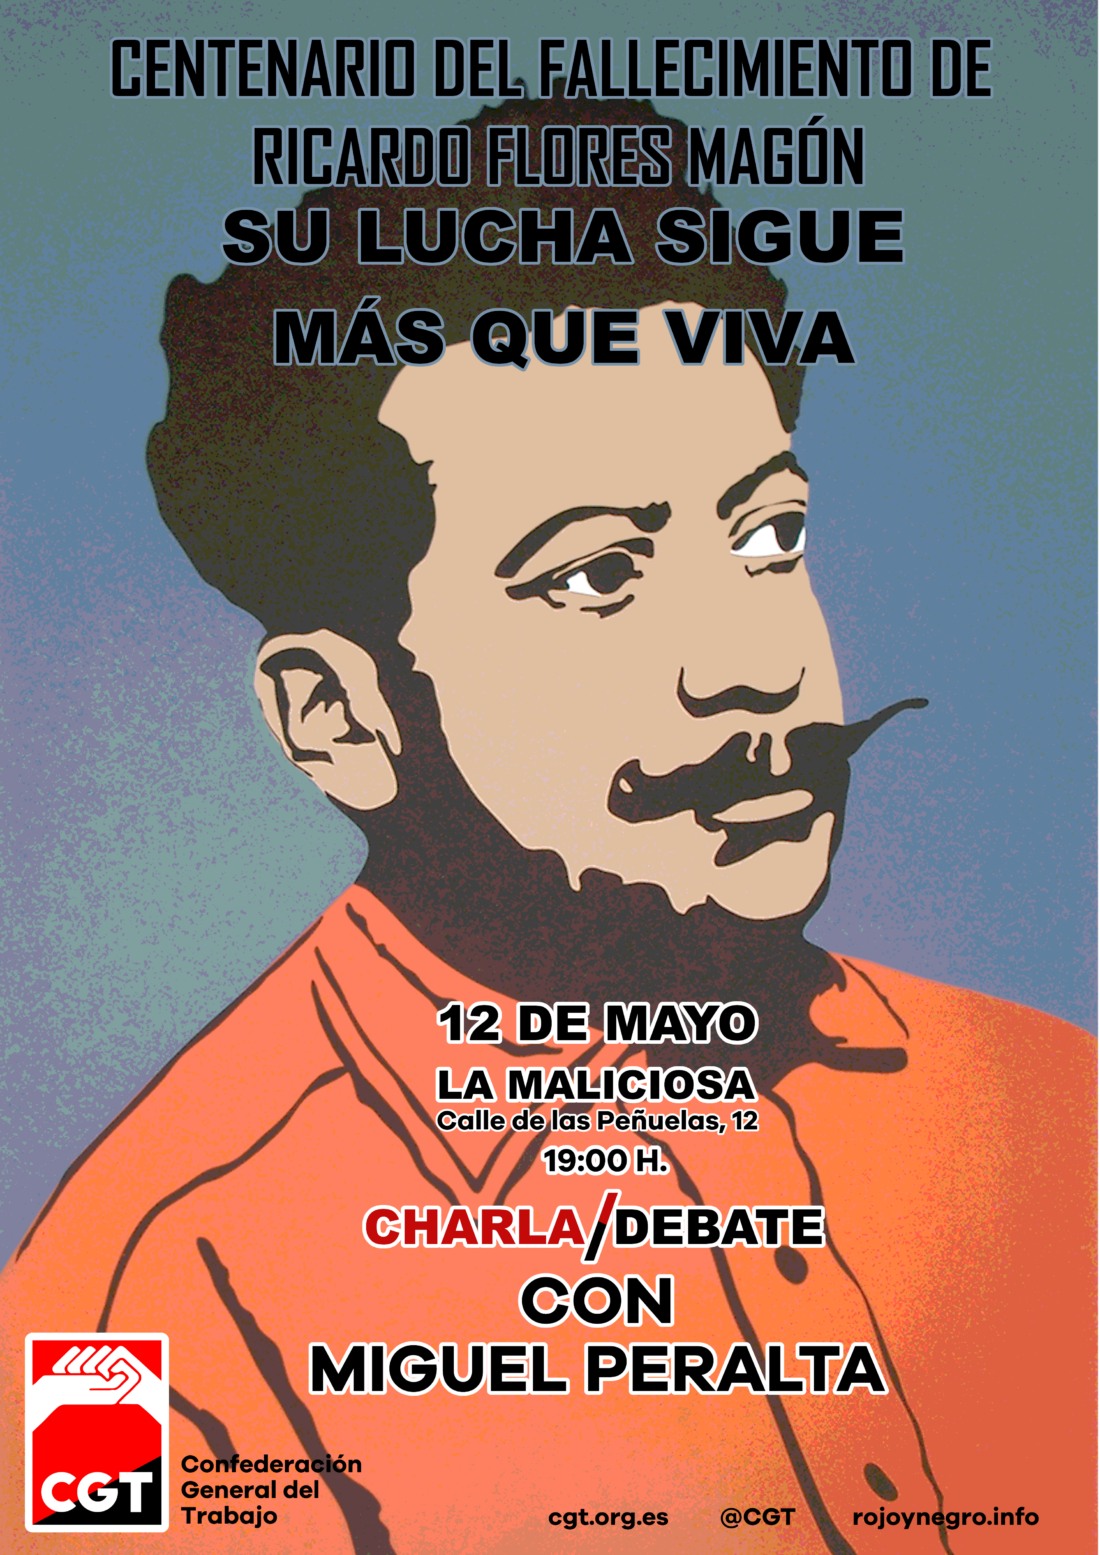 Charla/Debate con Miguel Peralta